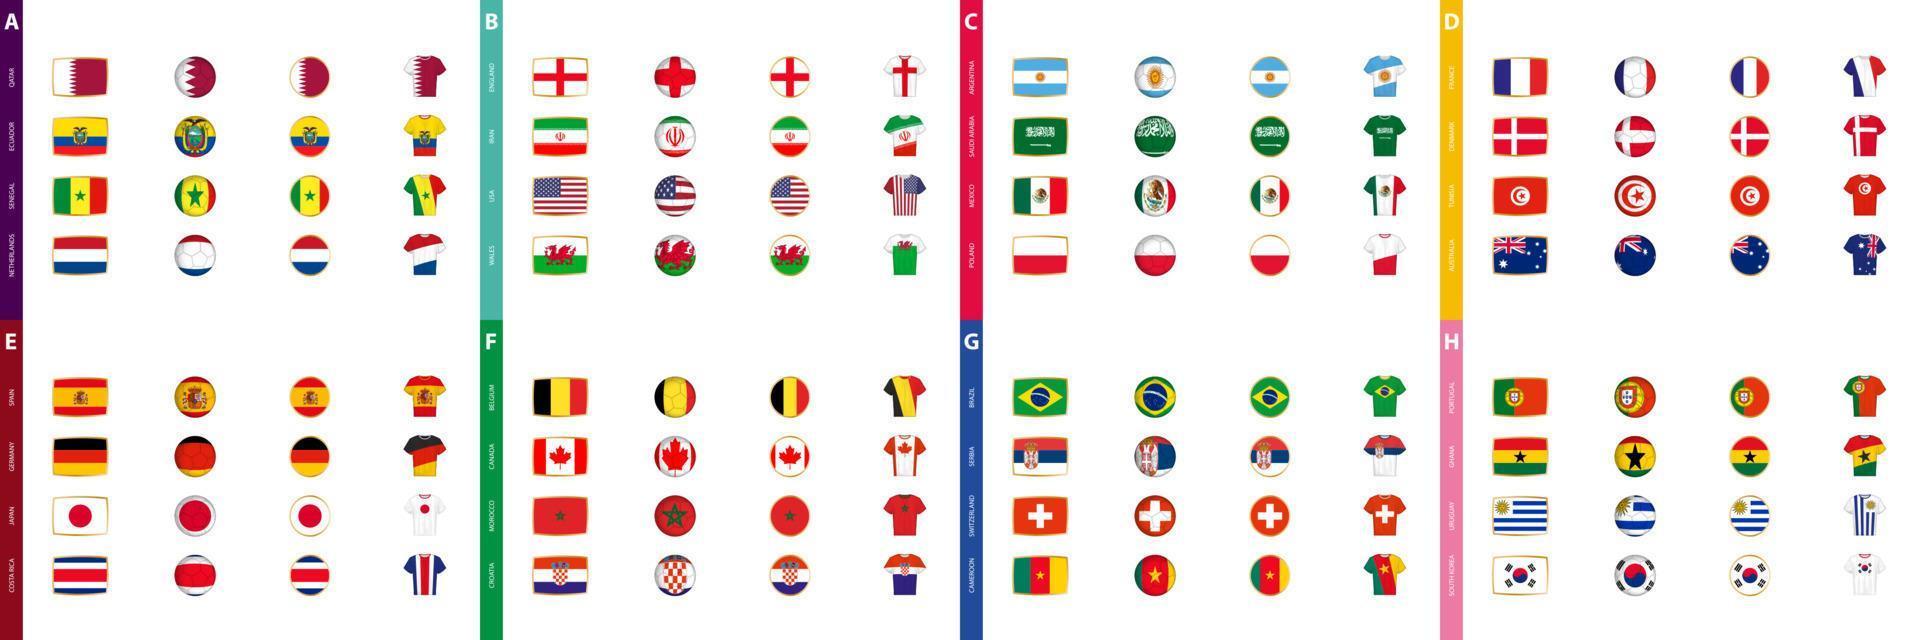 coleção de bandeiras de torneios de futebol, um grande conjunto de bandeiras classificadas por grupo de competição de futebol. vetor